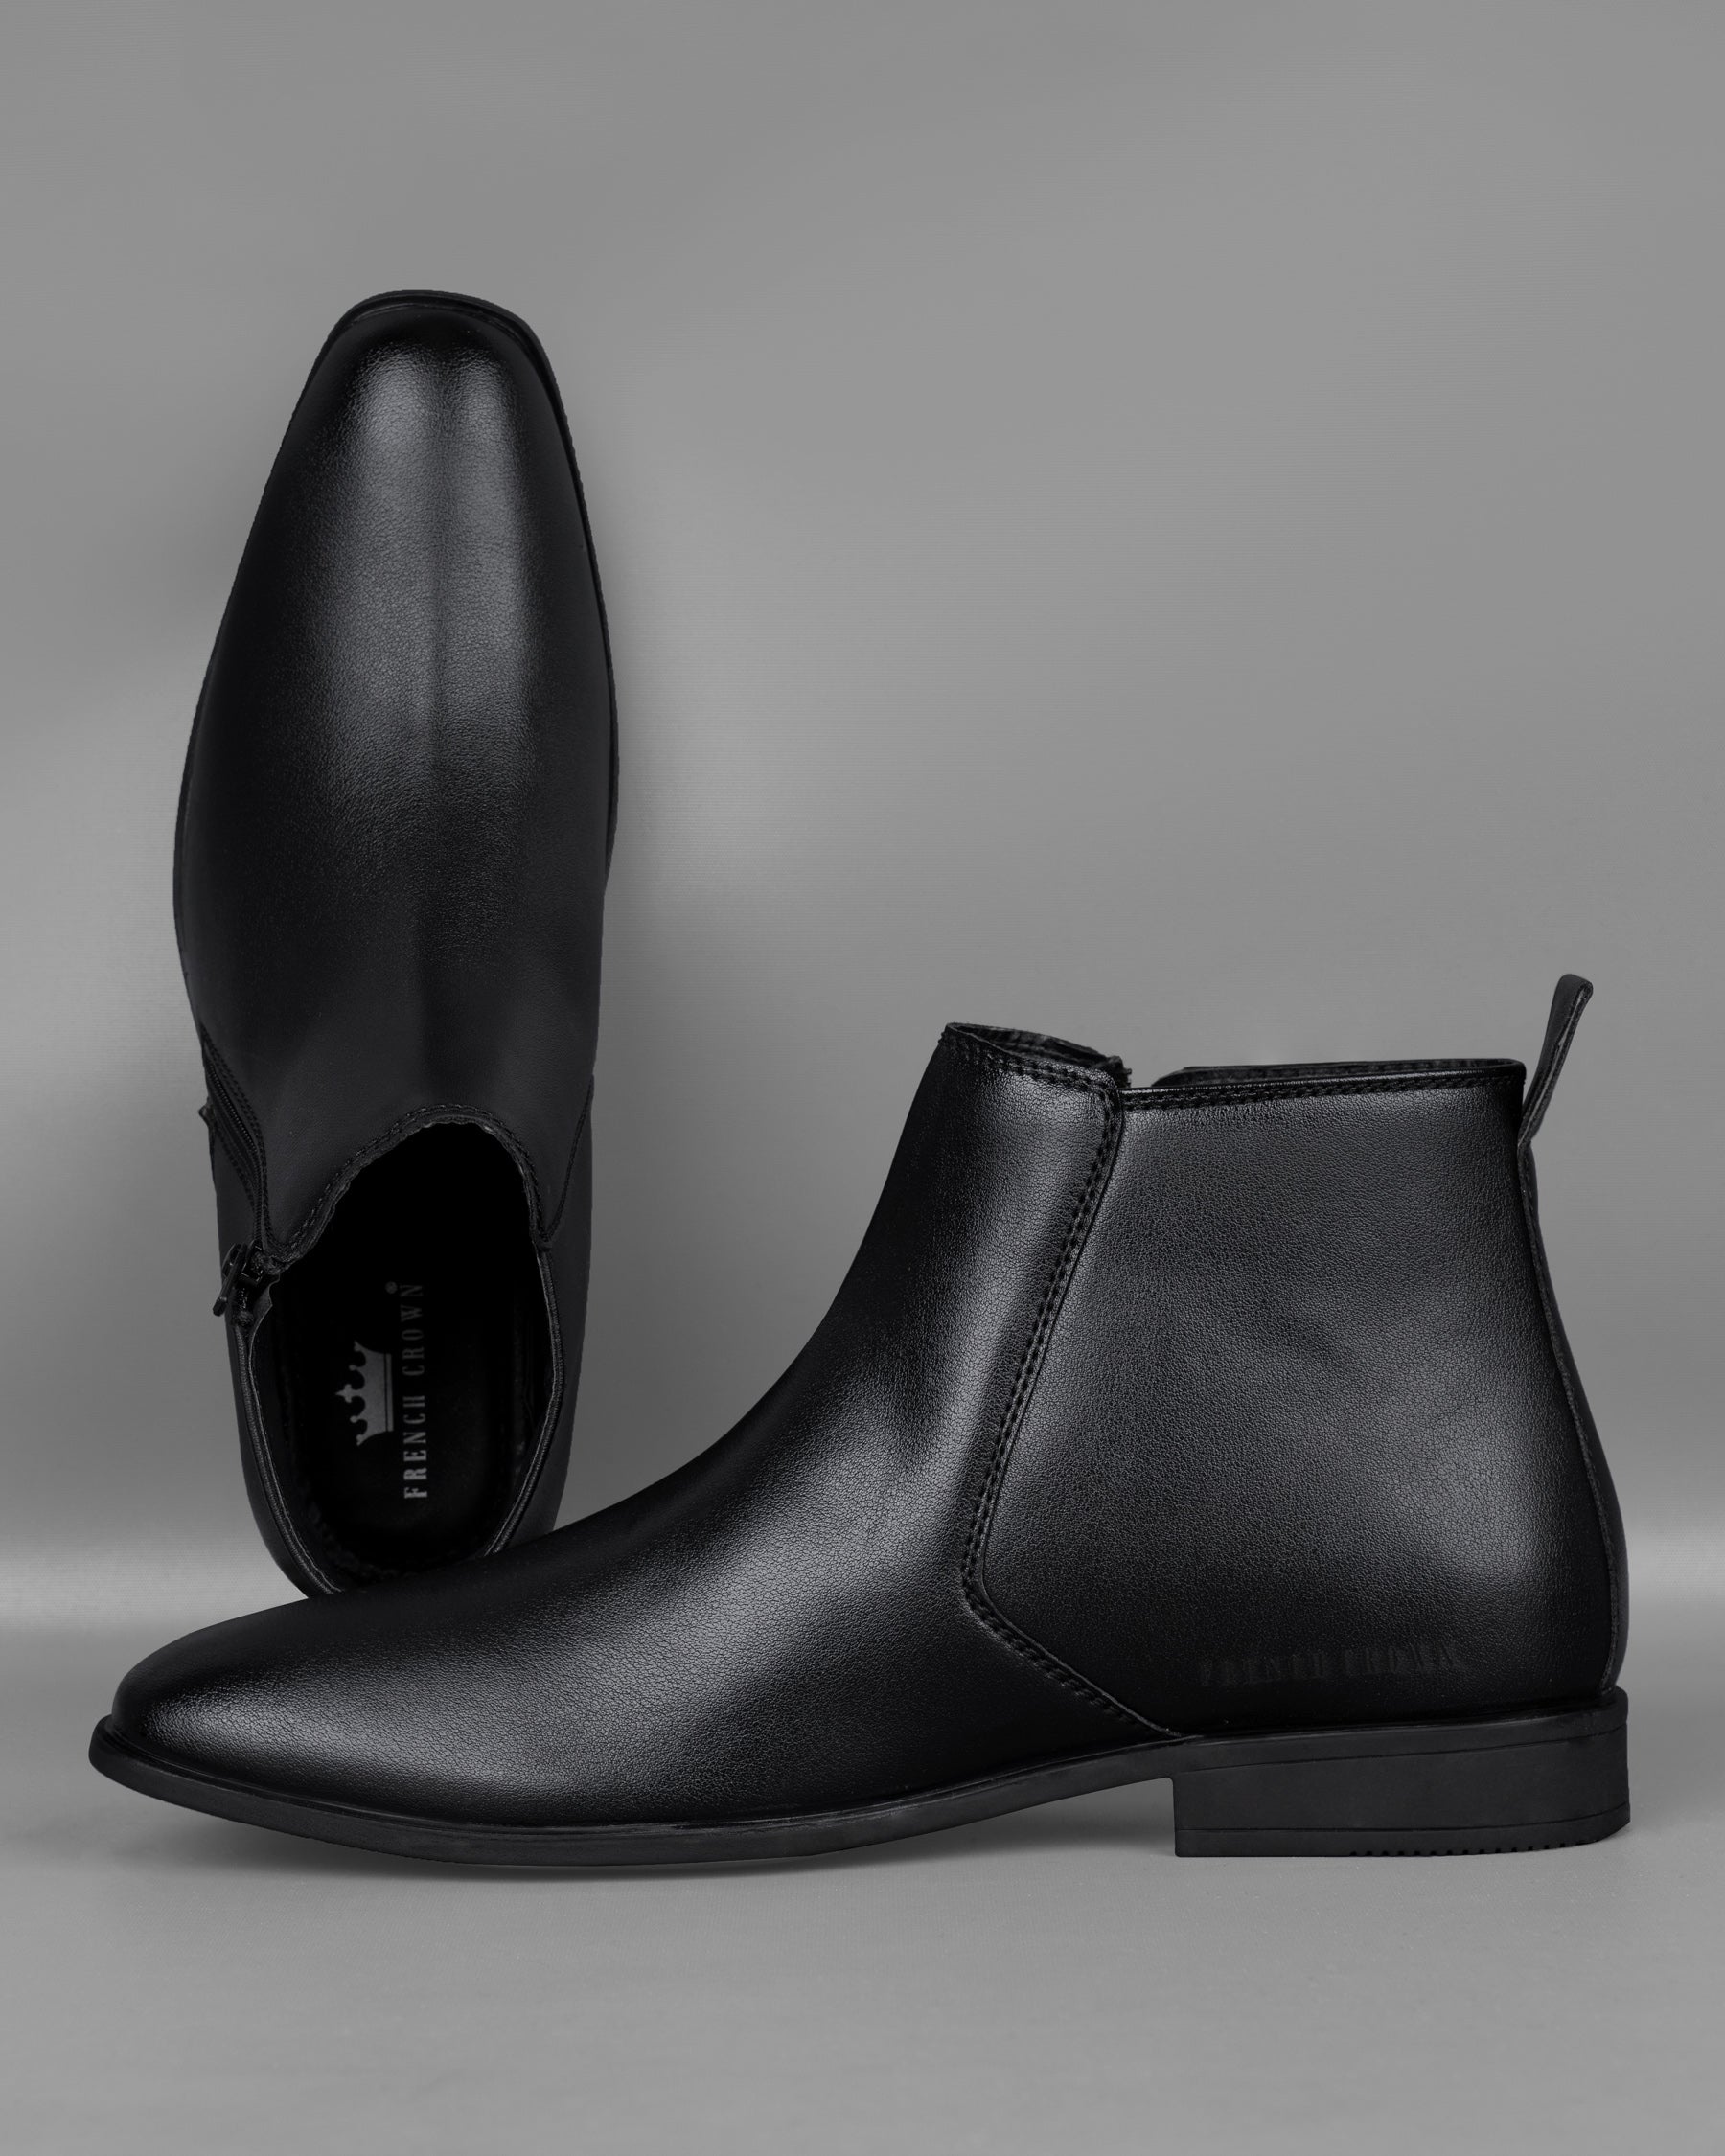 Jade Black Chelsea Boots FT029-6, FT029-7, FT029-8, FT029-9, FT029-10